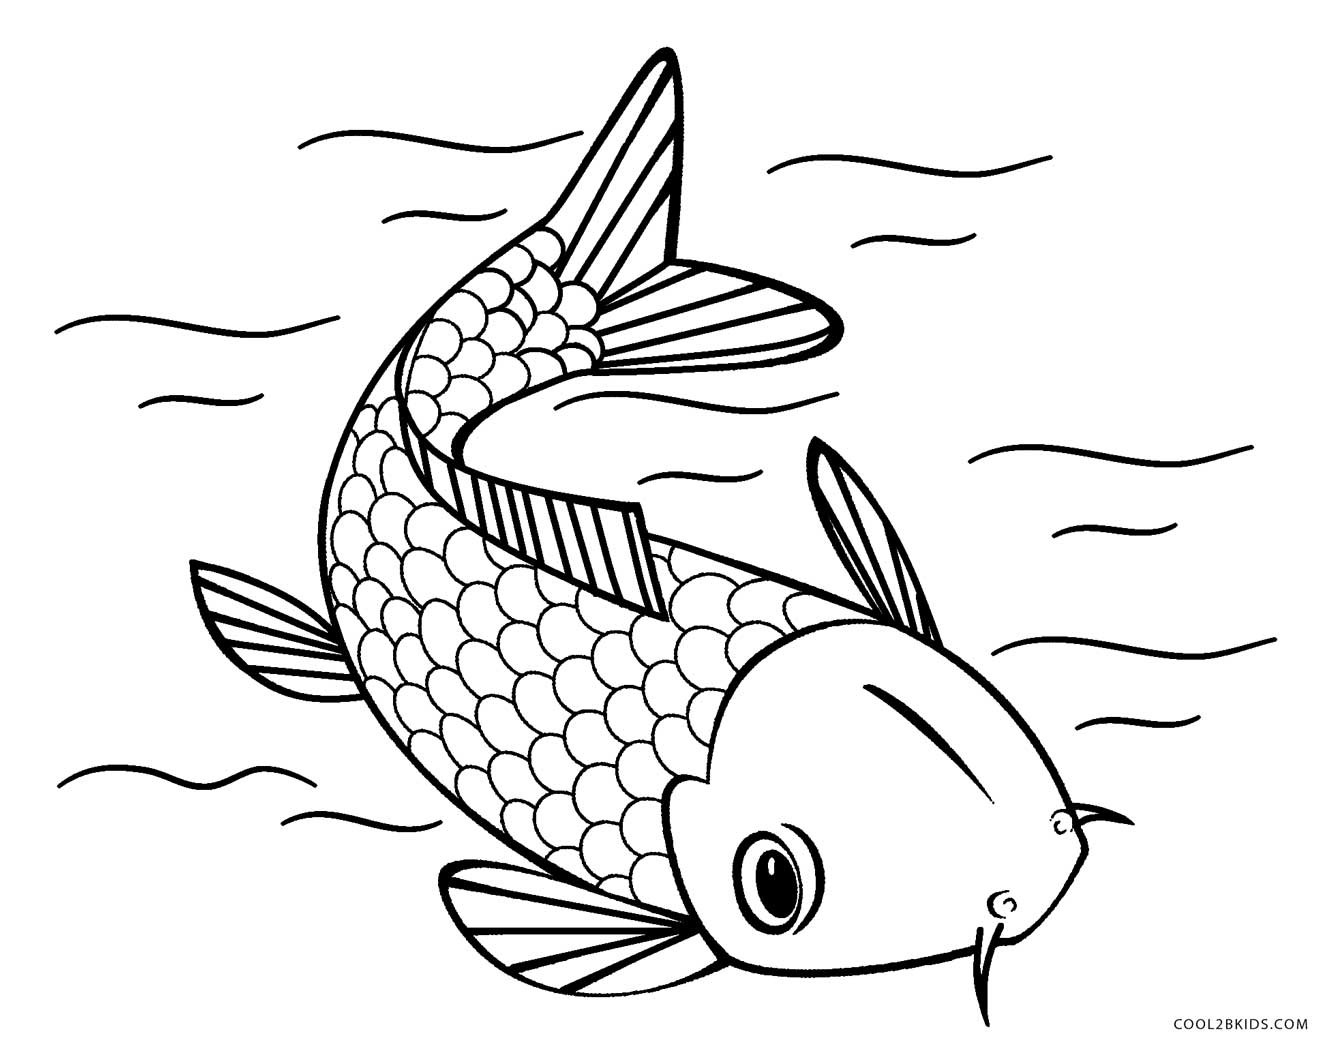 Раскраска рыбки для детей 5 6 лет. Рыбка сомик аквариумный раскраска. Раскраска рыбка. Рыба раскраска для детей. Рыбка для раскрашивания для детей.